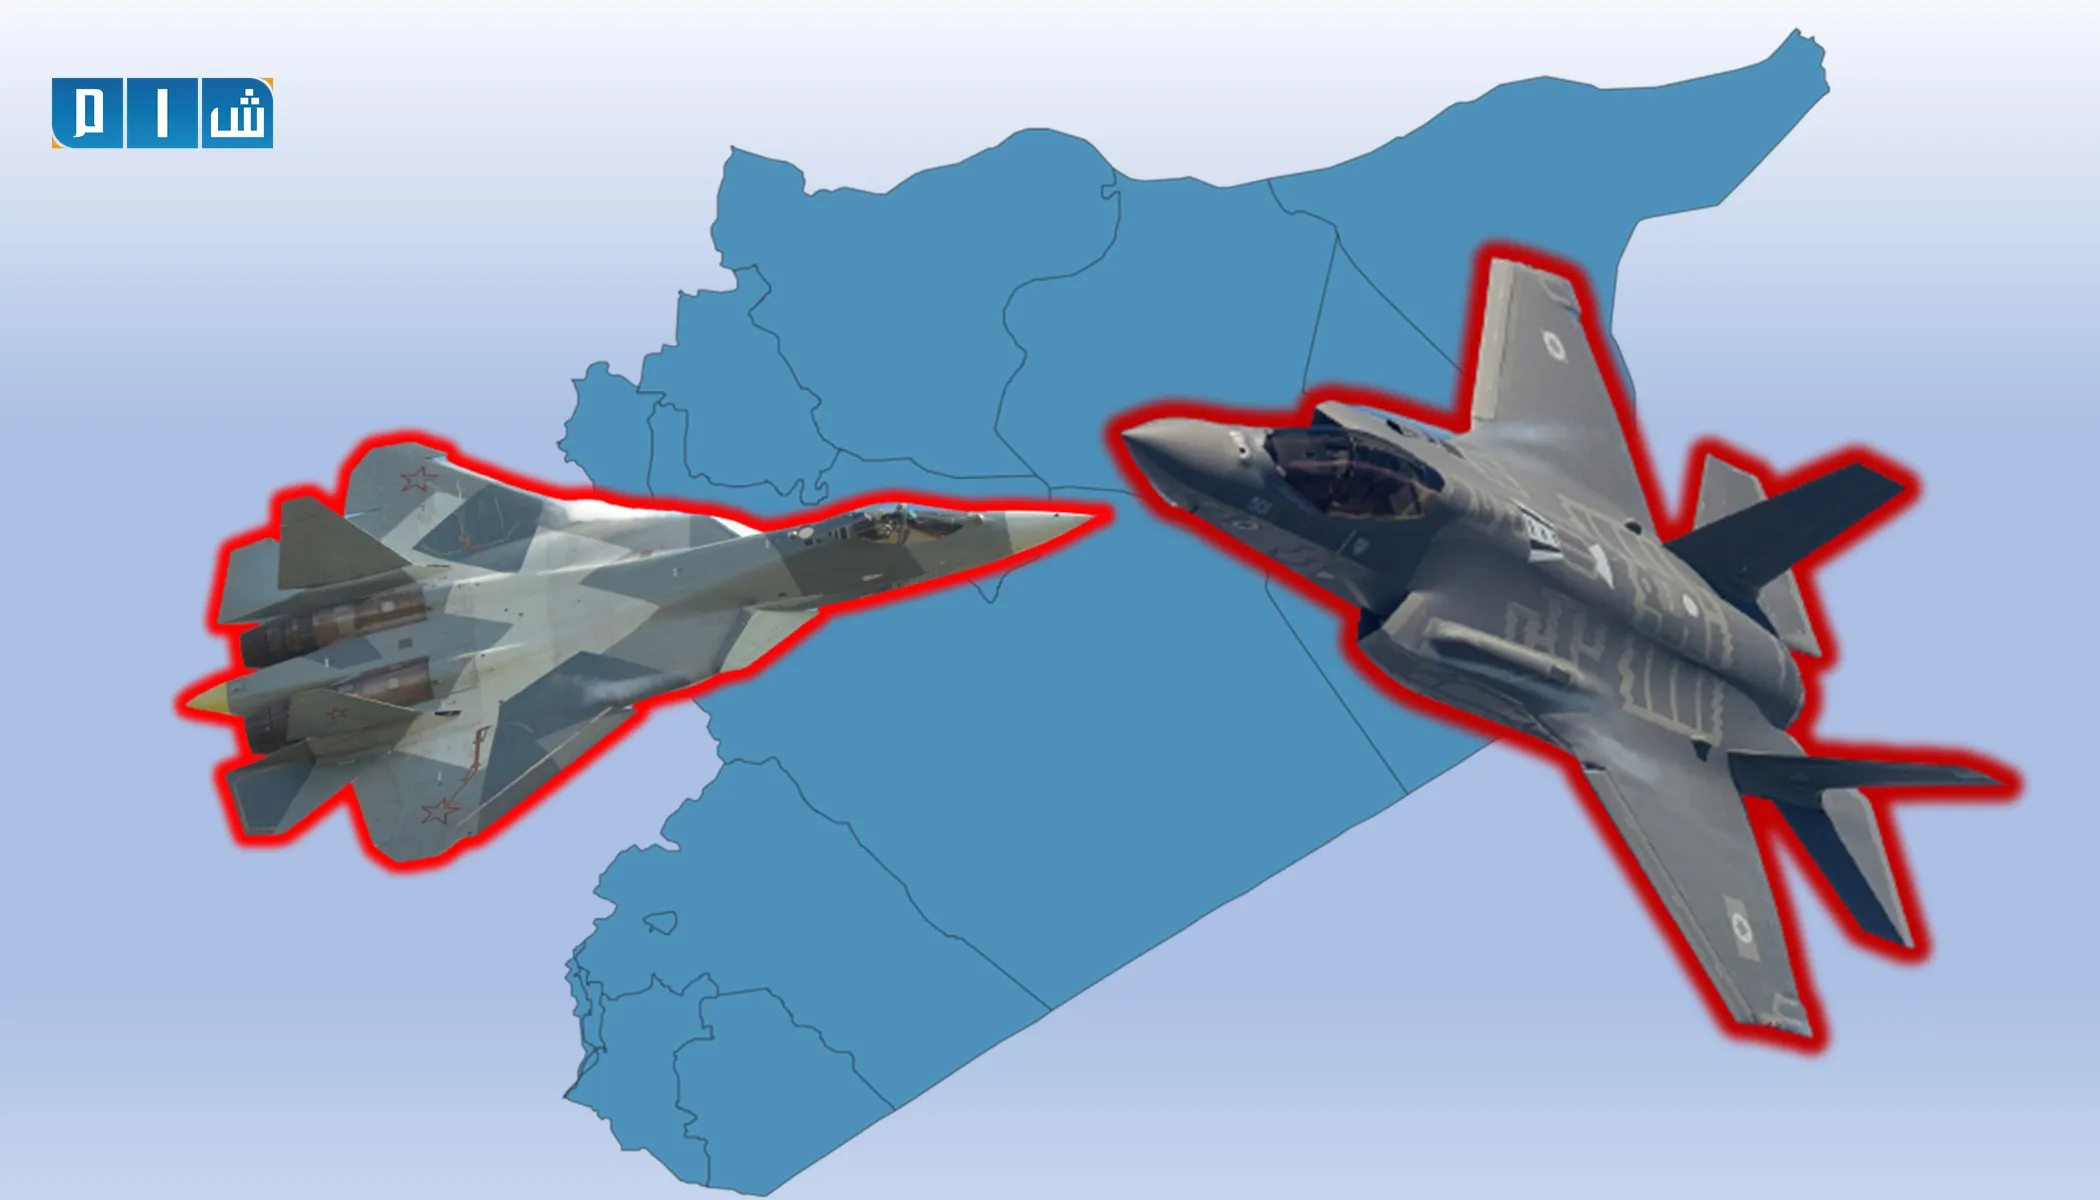 "المصالحة الروسي" يتهم واشنطن بانتهاك سلامة الرحلات الجوية في سوريا 